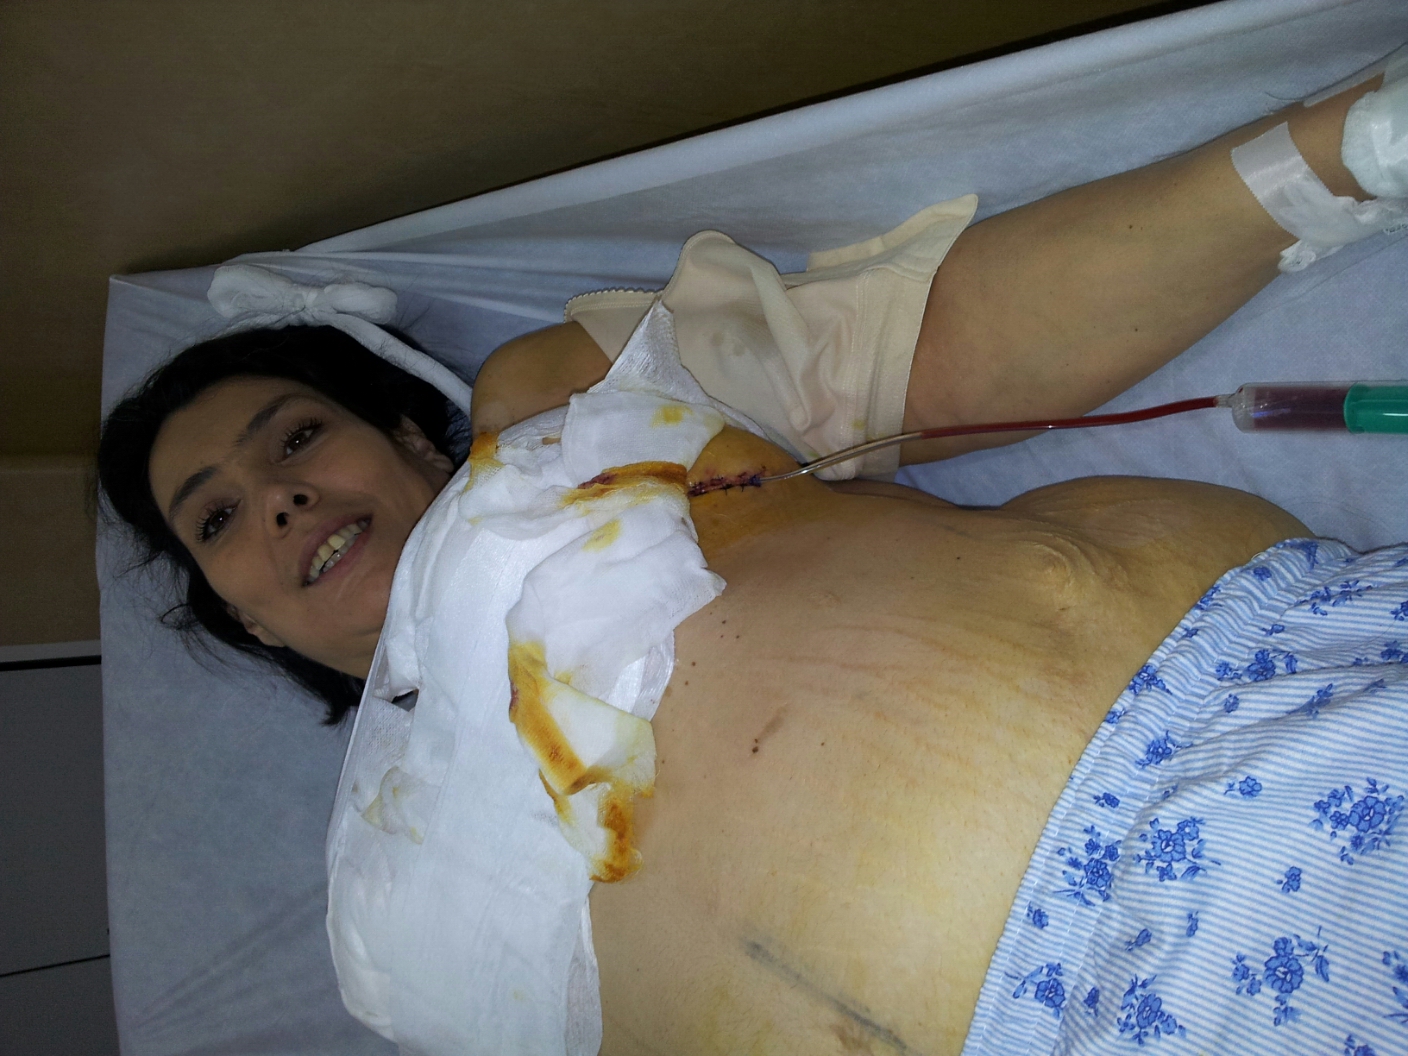 Fiica Andei Calugareanu a ajuns din nou pe mana medicilor, chinuita de perioada post-operatorie